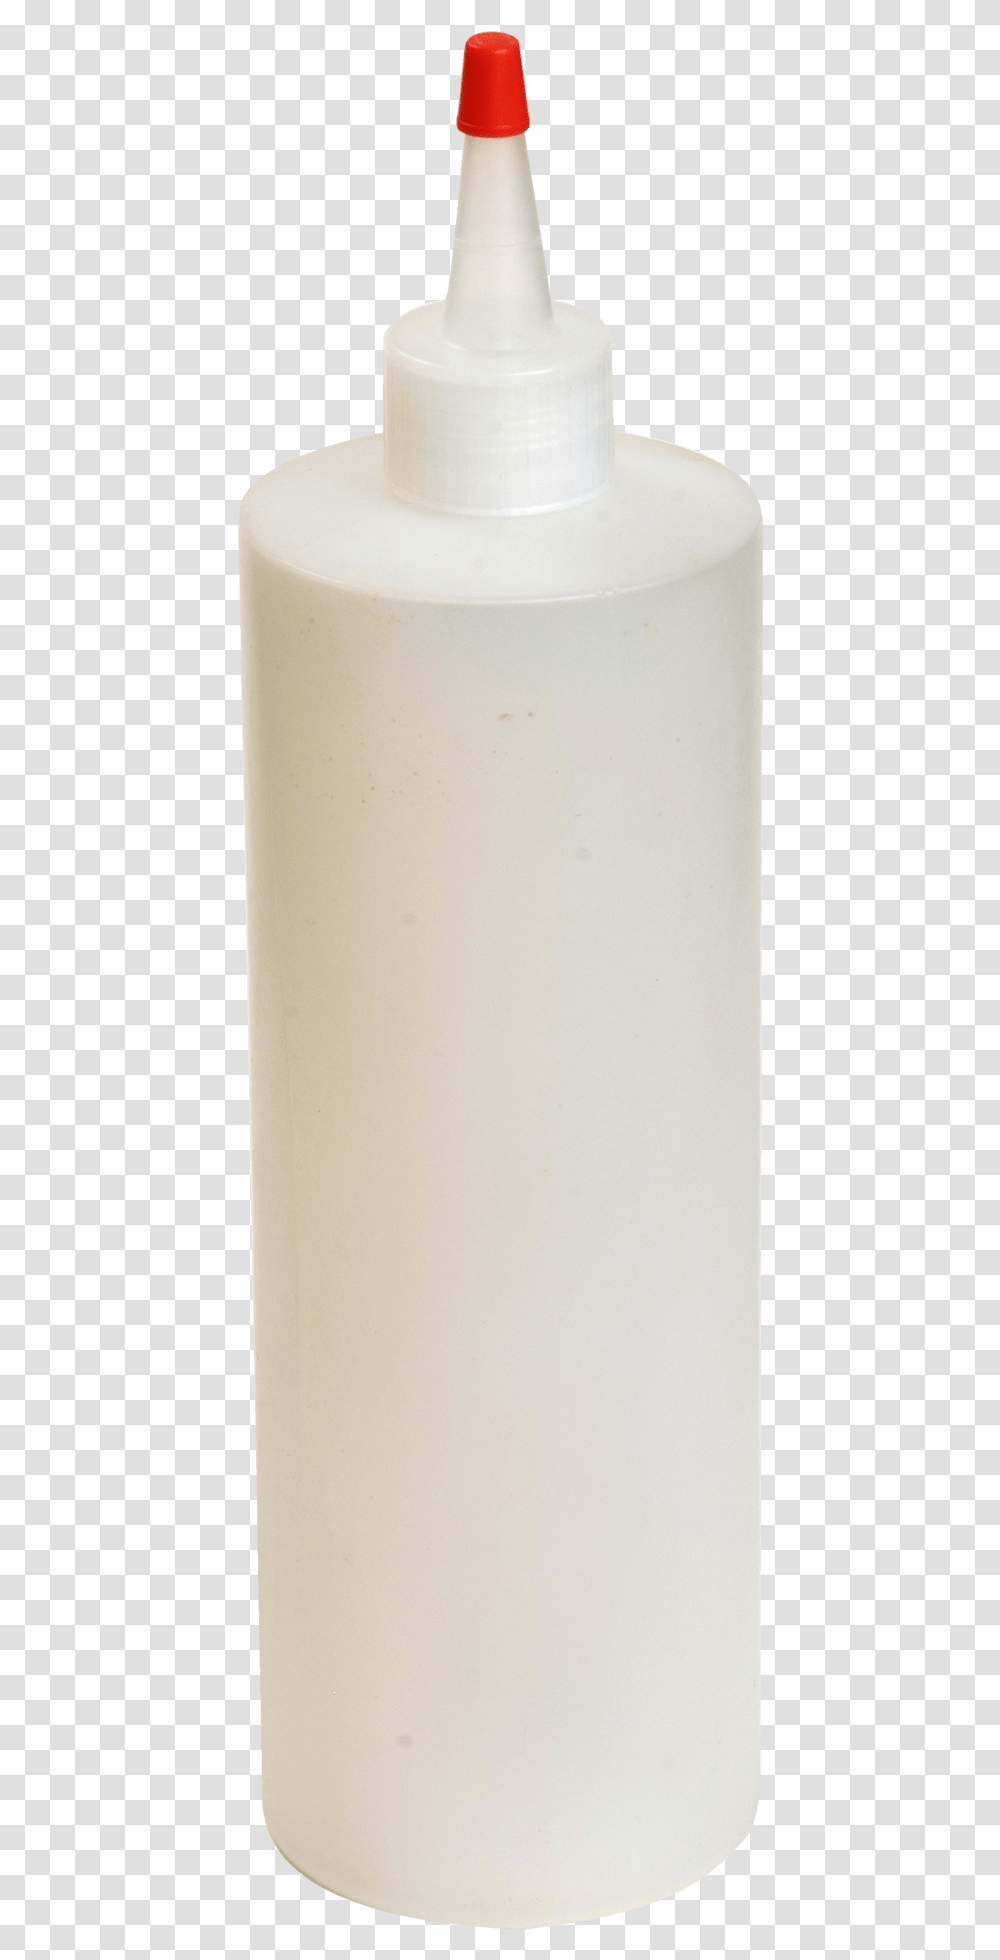 Pint Bottles For Fringe Adhesive Empty 16 Oz Plastic Bottle, Milk, Beverage, Jar, Cylinder Transparent Png